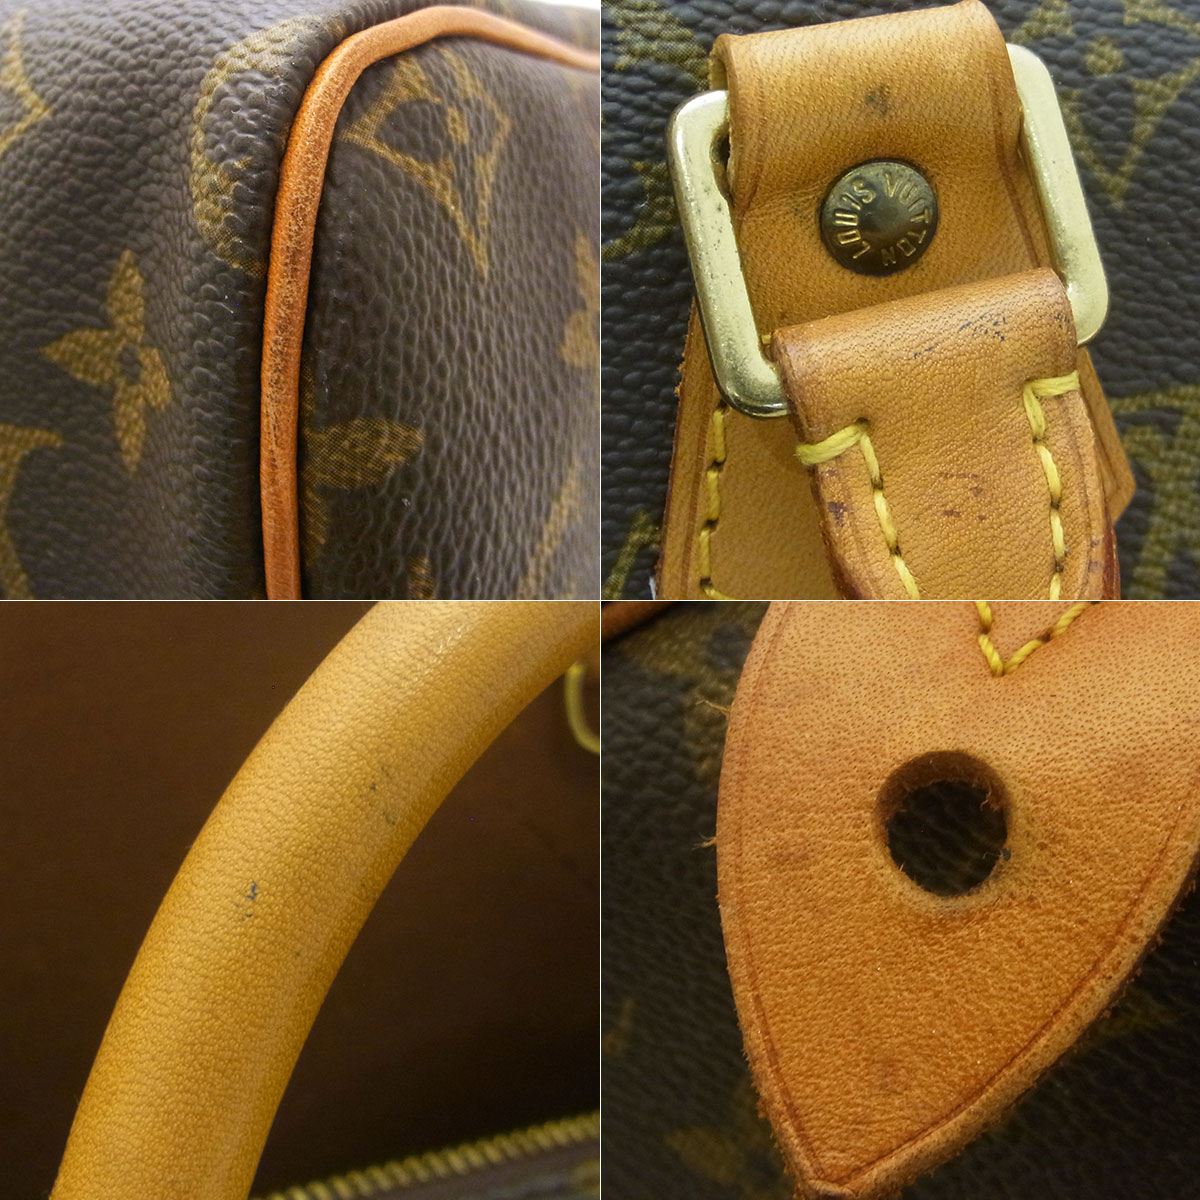 ルイヴィトン(Louis Vuitton) スピーディ30 M41526 ボストンバッグ 鍵 カデナ モノグラム ブラウン